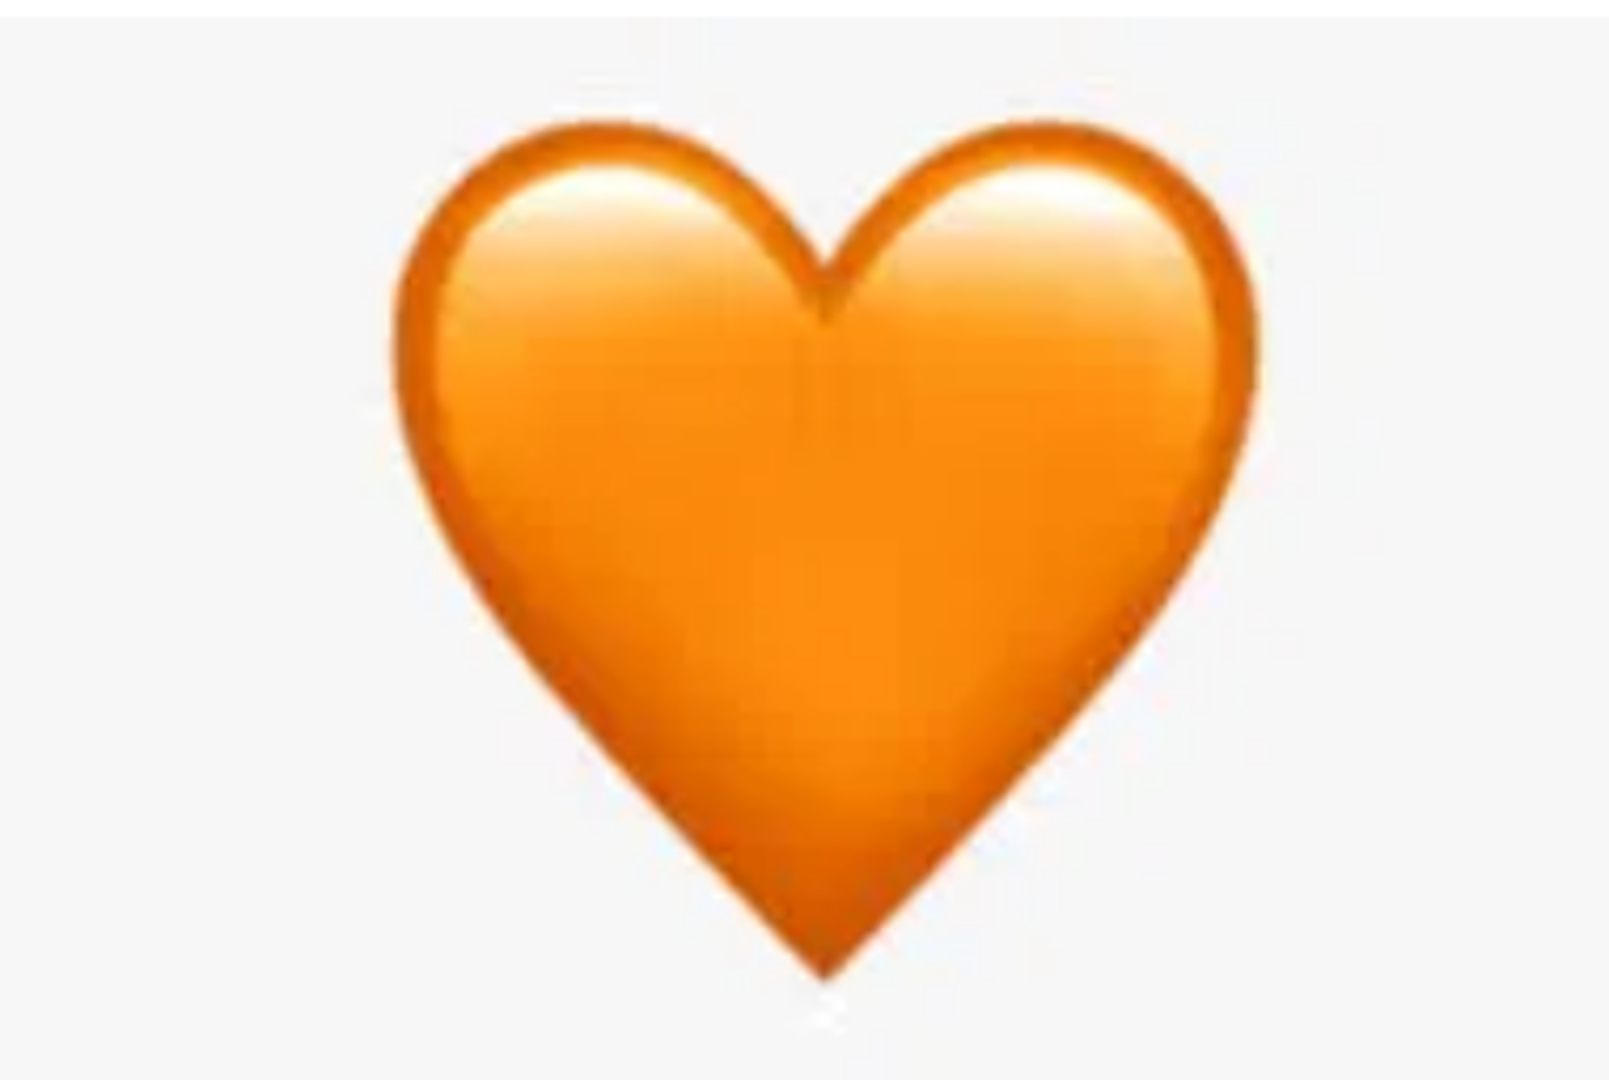 Narančasta boja povezana je s toplinom i svjetlom, pa se može koristiti za prikazivanje spokoja, vedrine, brige i ugode. Isto kao i žuto, označava prijateljstvo i podršku.
